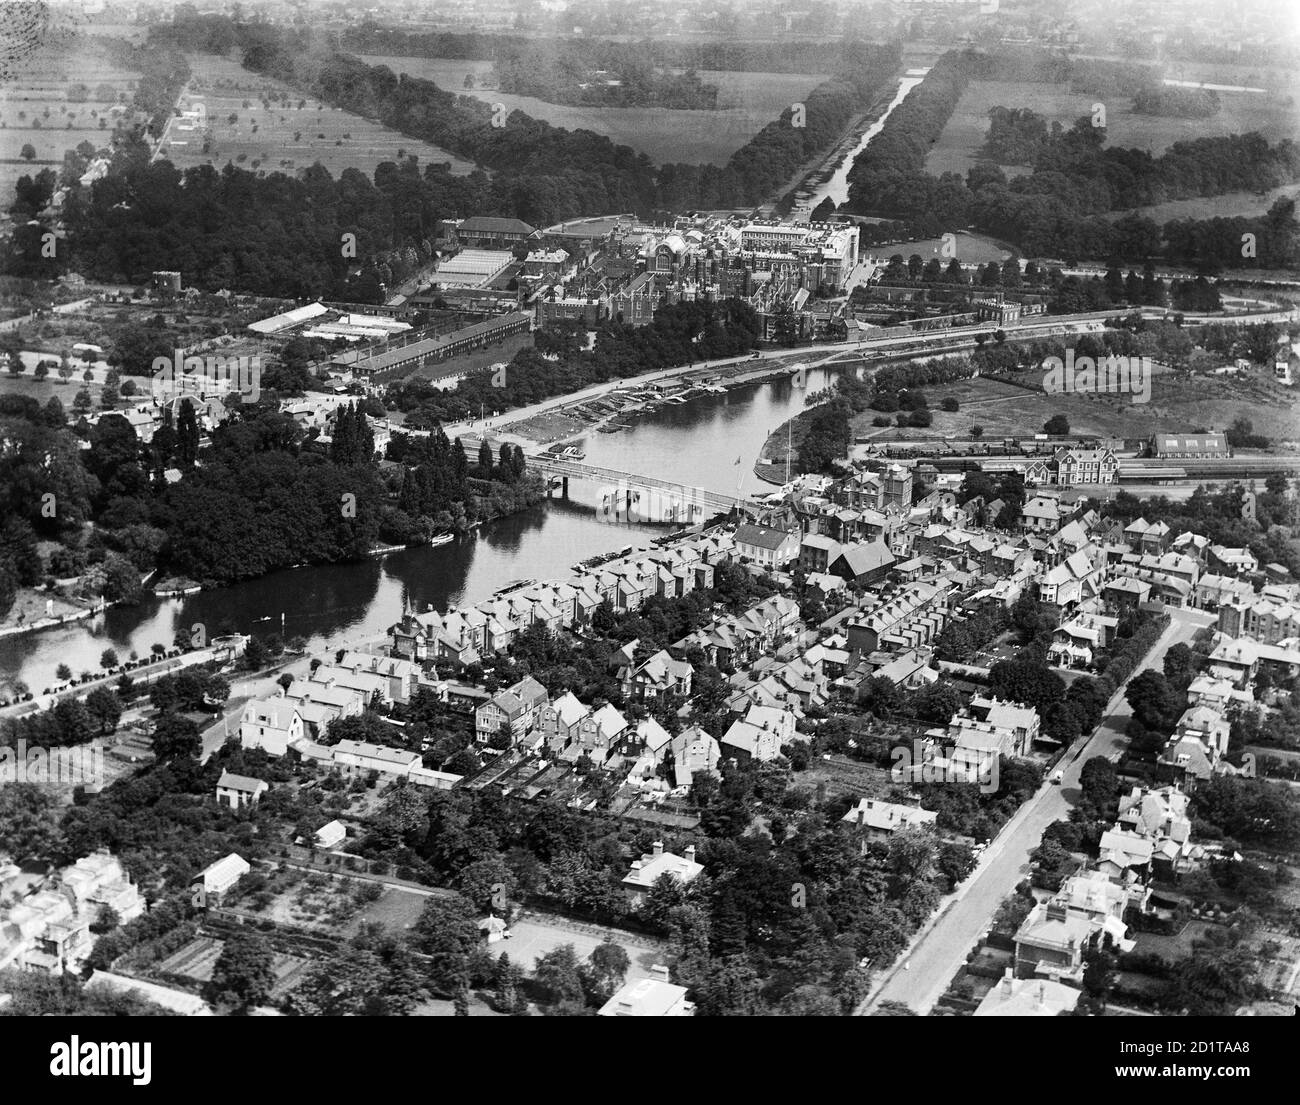 HAMPTON COURT, Richmond-upon-Thames, Londres. Vue aérienne du palais de Hampton court, des jardins et de la Tamise. Photographié en 1920. Collection Aerofilm (voir liens). Banque D'Images